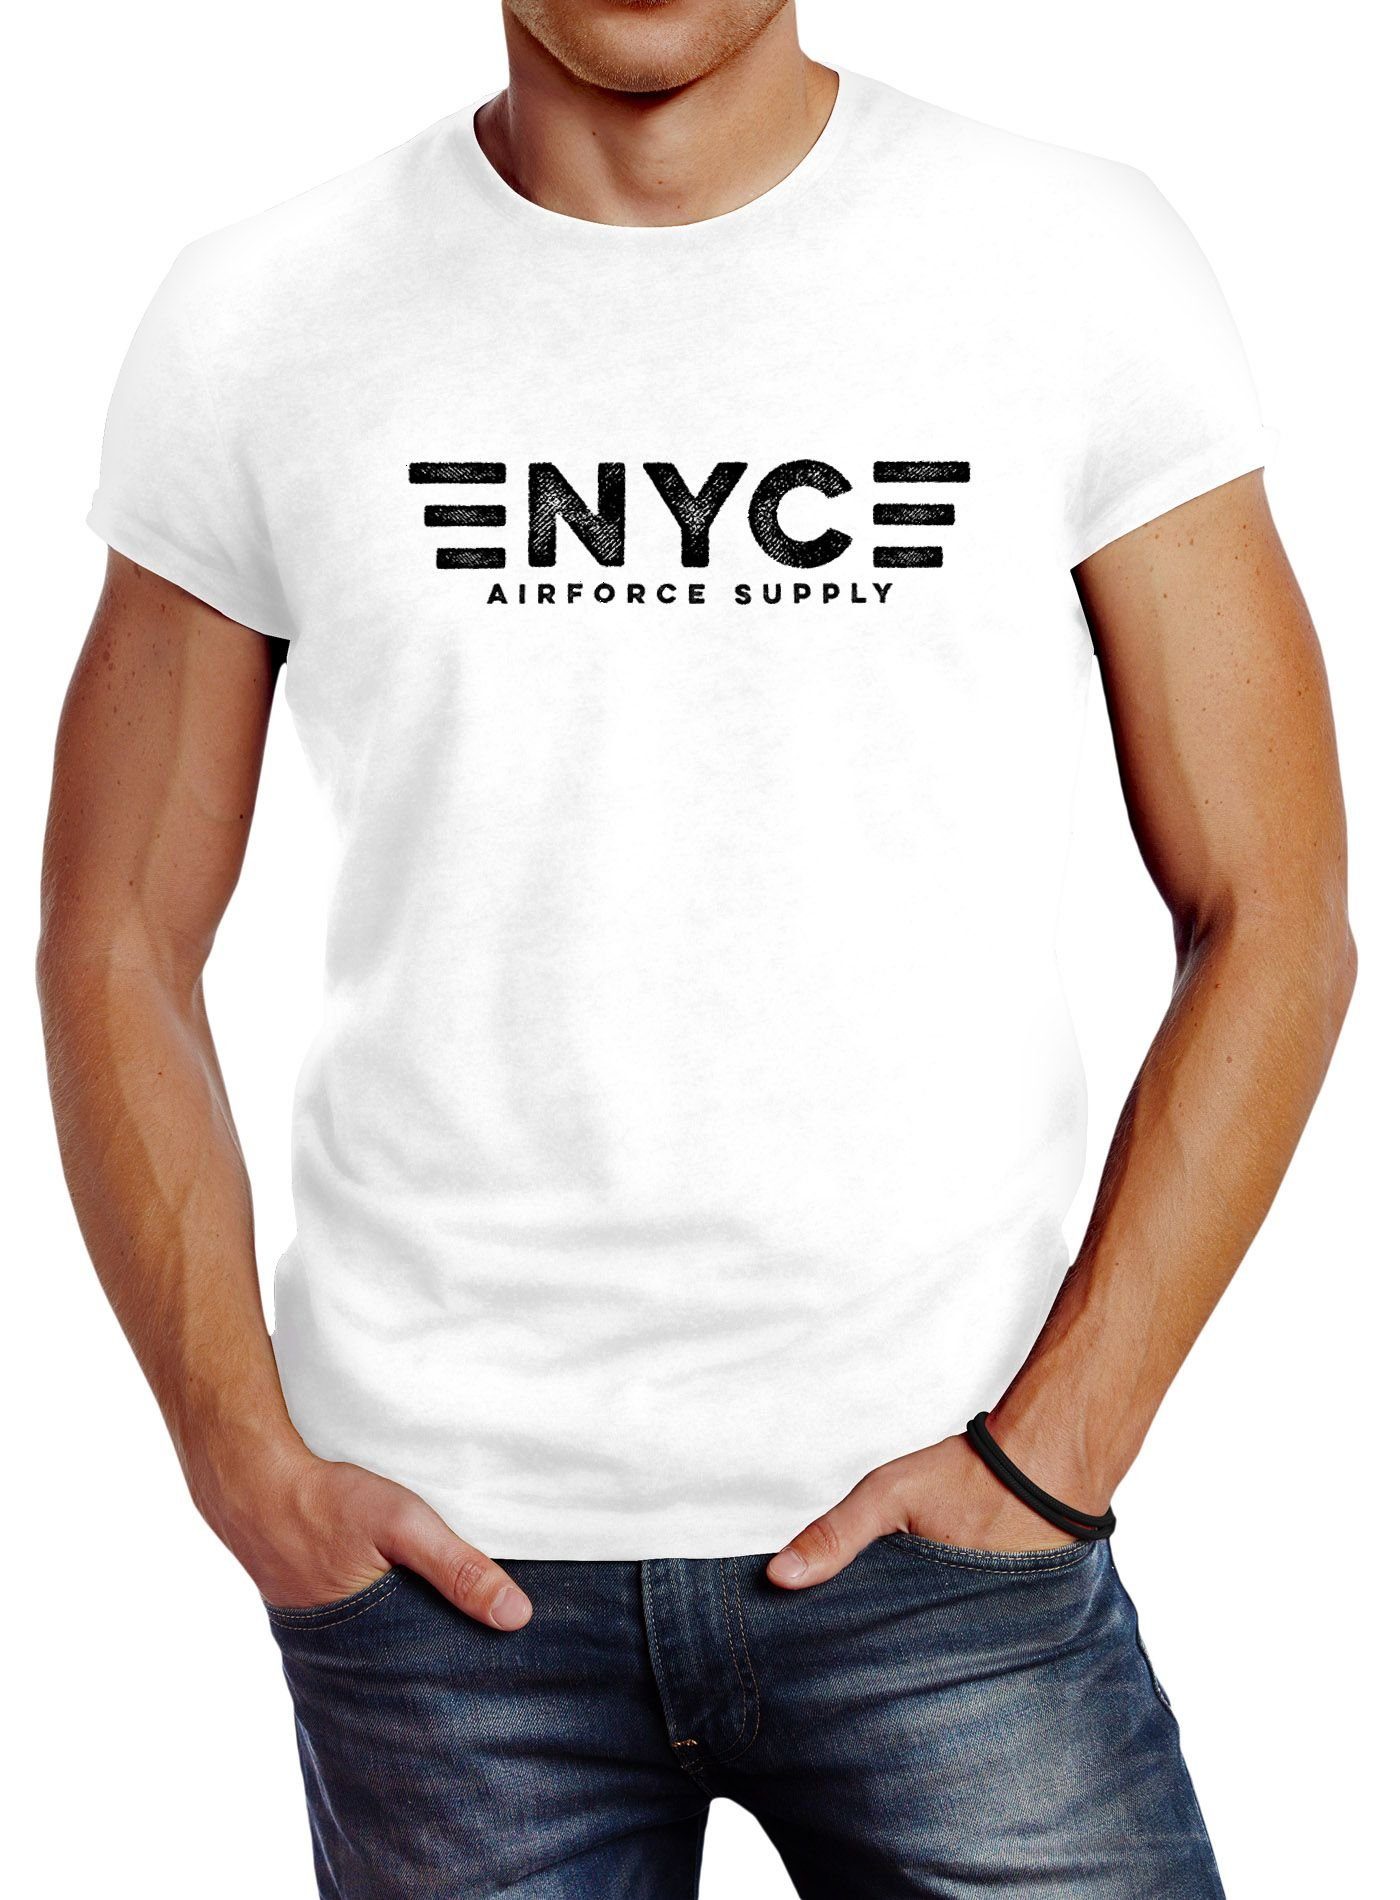 Neverless Print-Shirt Herren T-Shirt Aufdruck NYC New York City Airforce Supply Army Print Neverless® mit Print weiß